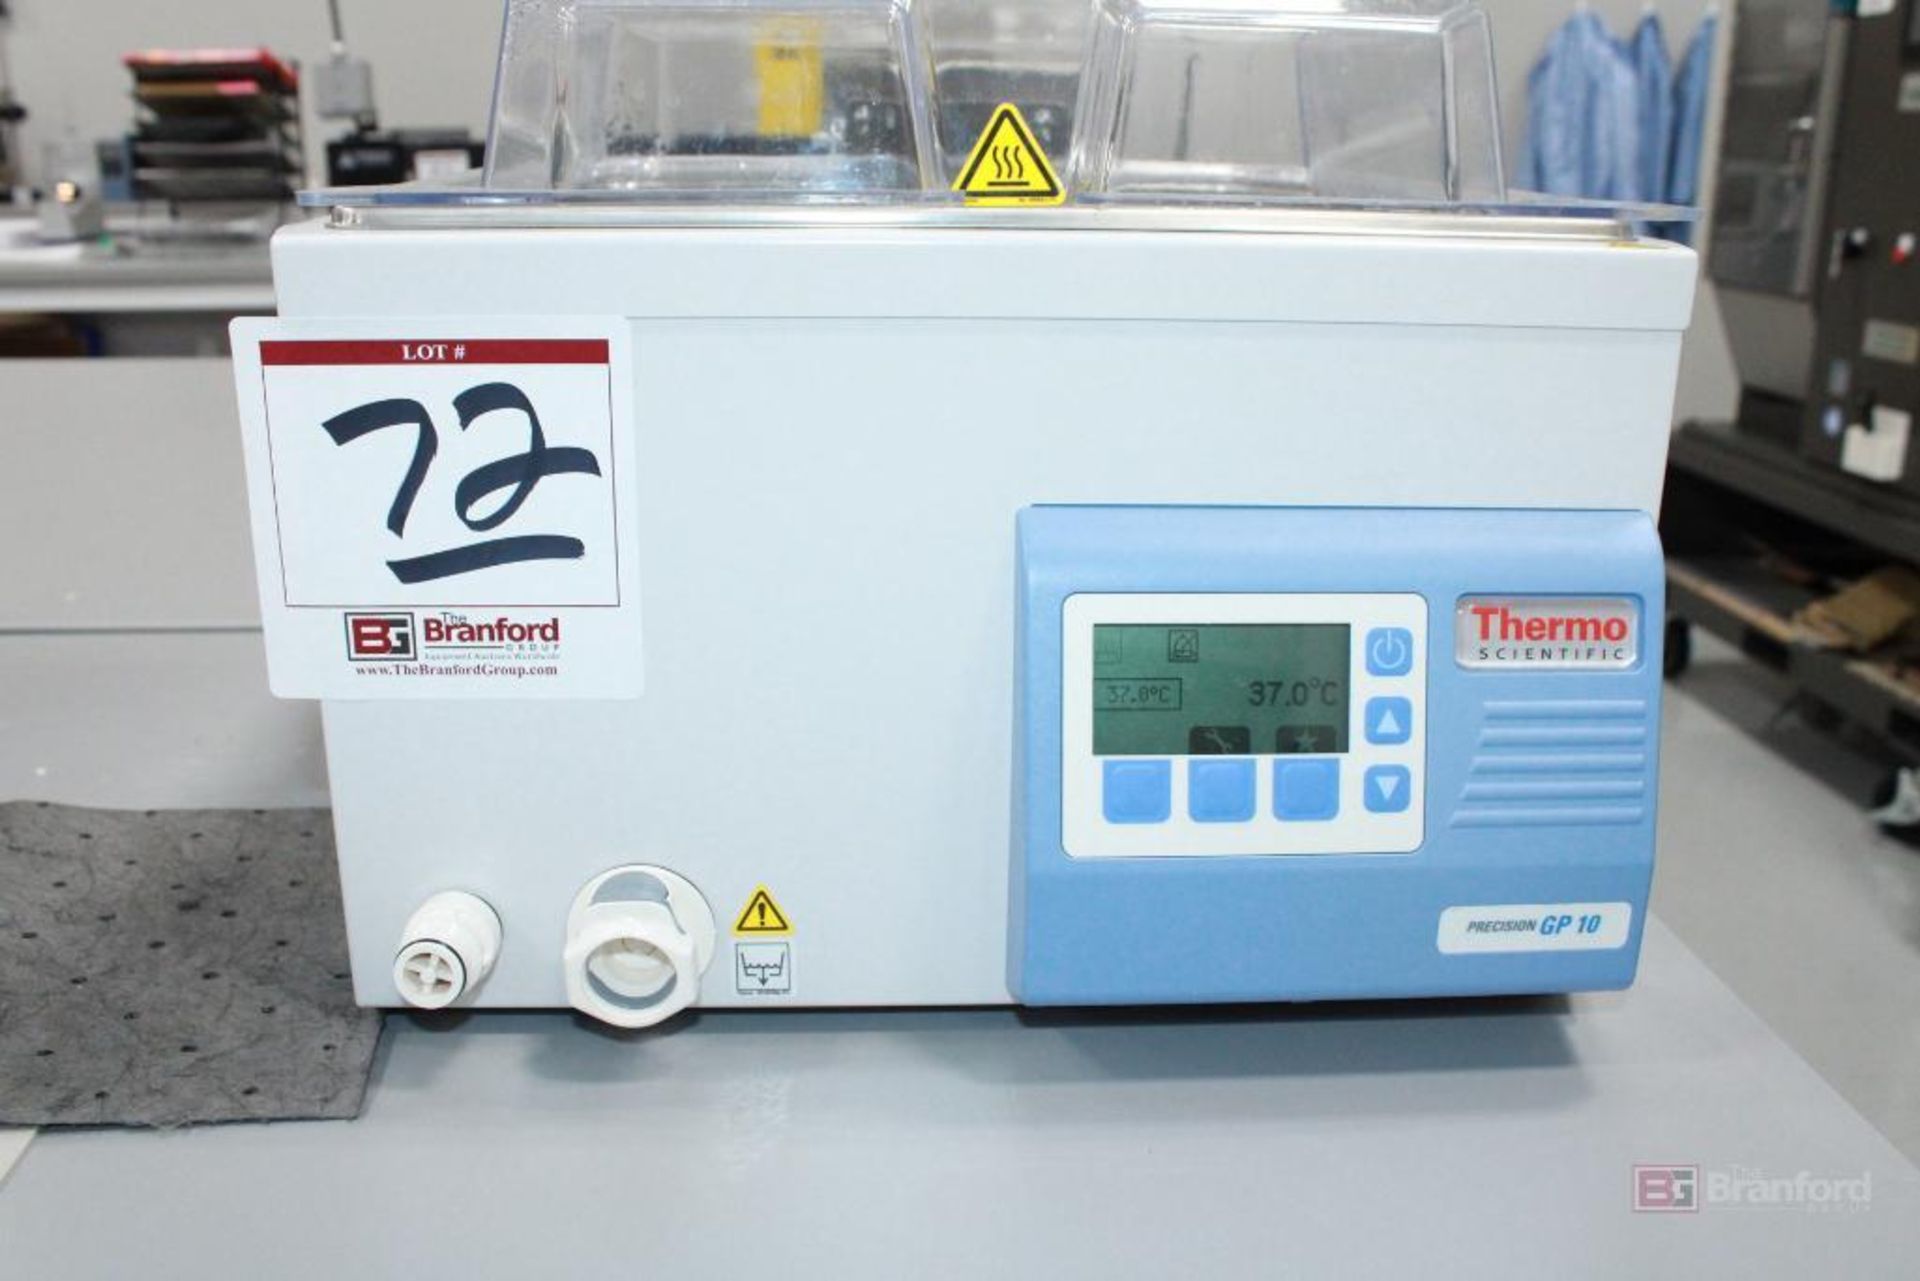 Thermo Scientific Precision GP 10 Model TSGP10 - Bild 2 aus 4